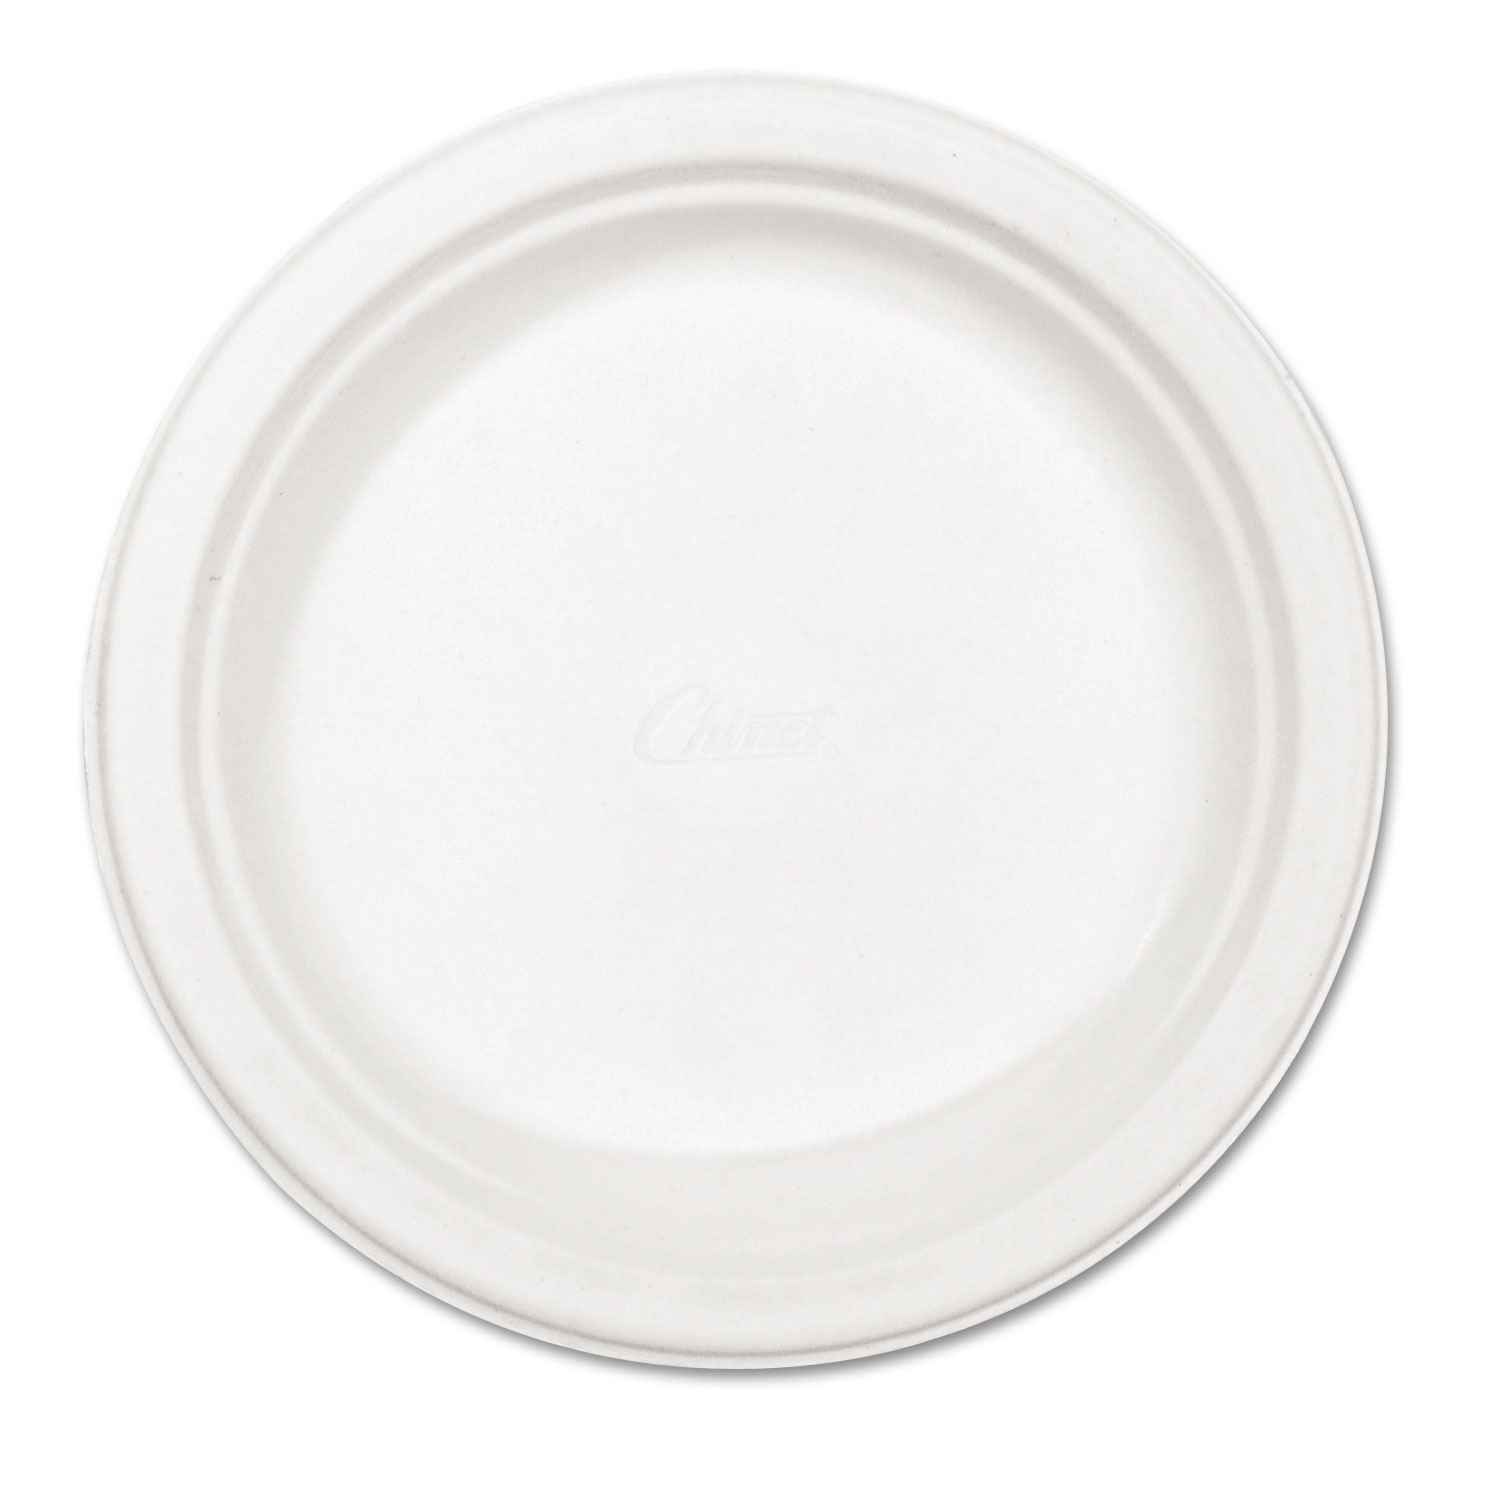  Chinet 21227 Paper Dinnerware, Plate, 8 3/4 dia, White, 500/Carton (HUH21227) 